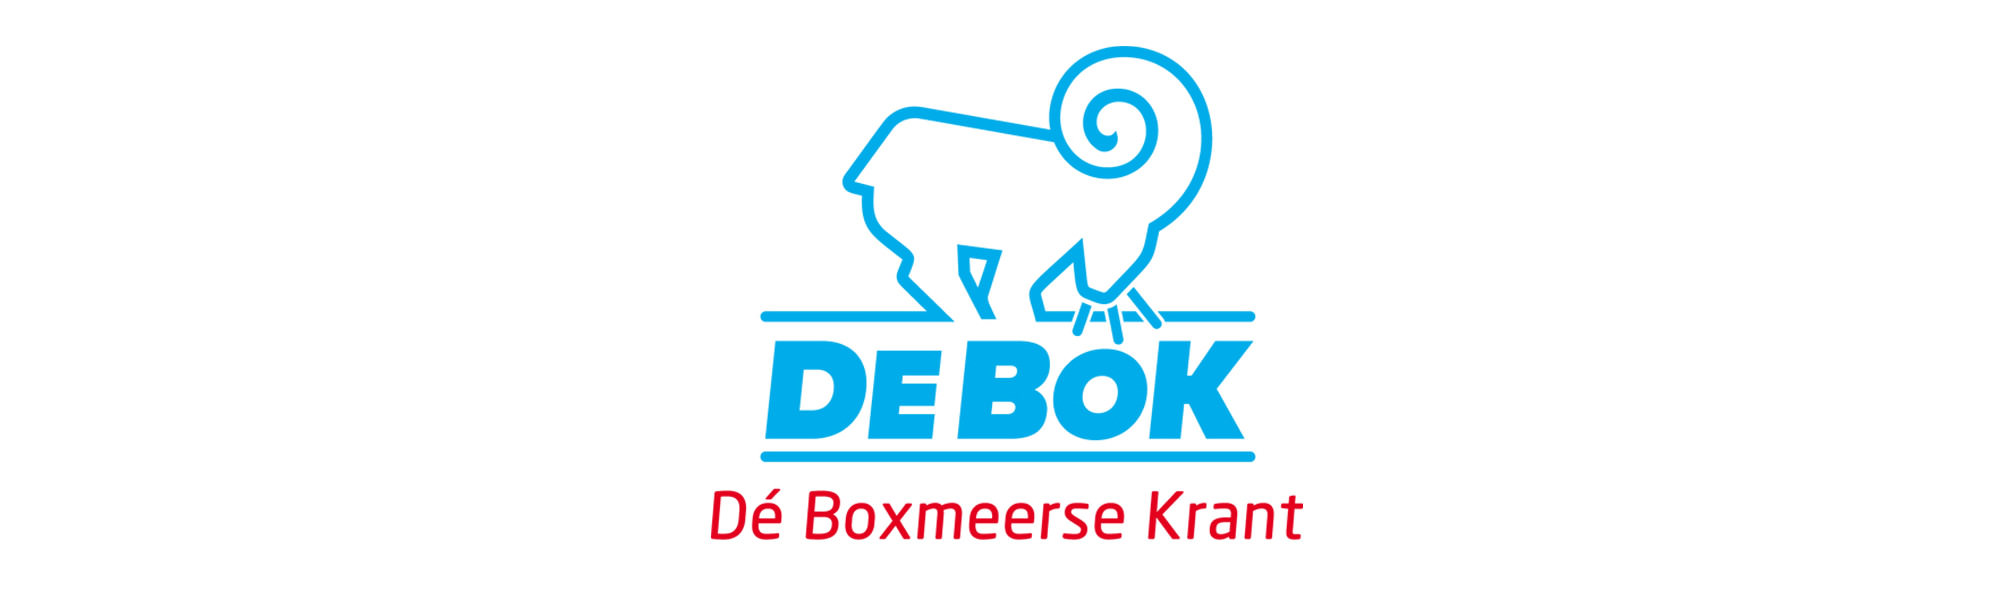 DeBoK, De Boxmeerse Krant